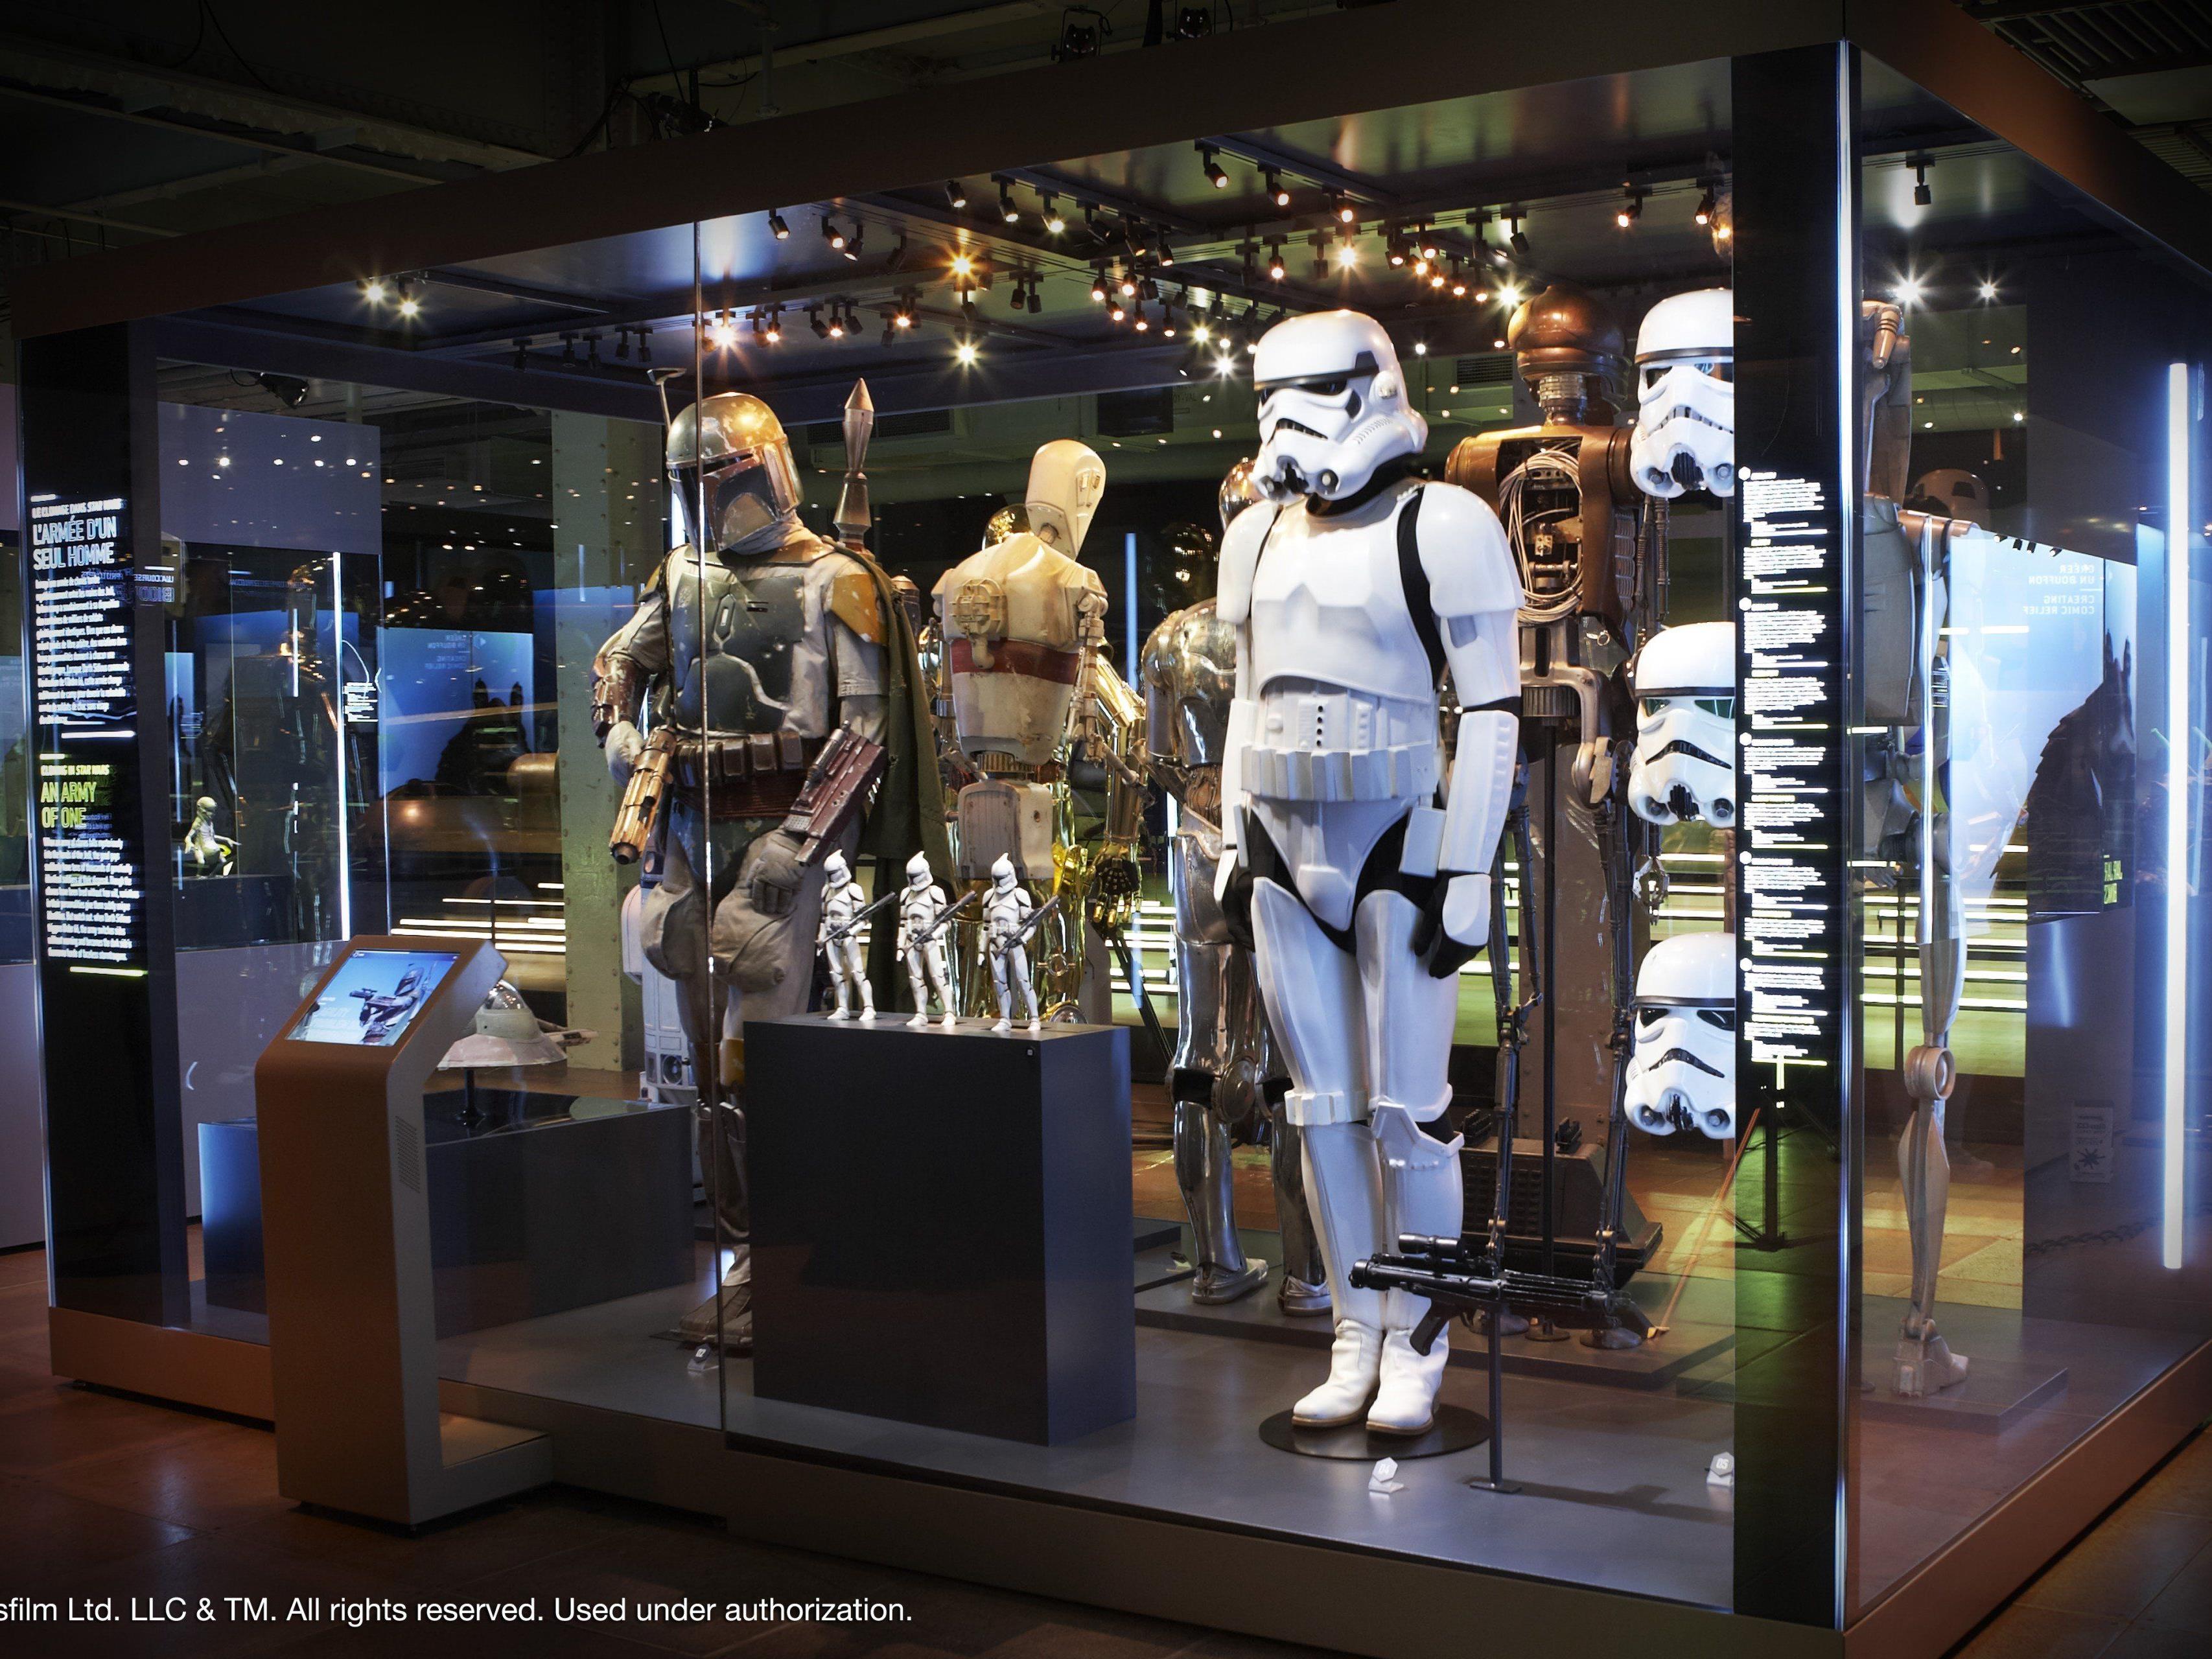 Ab dem 18. Dezember 2015 ist die Ausstellung "Star Wars Identities" im Wiener MAK zu sehen.